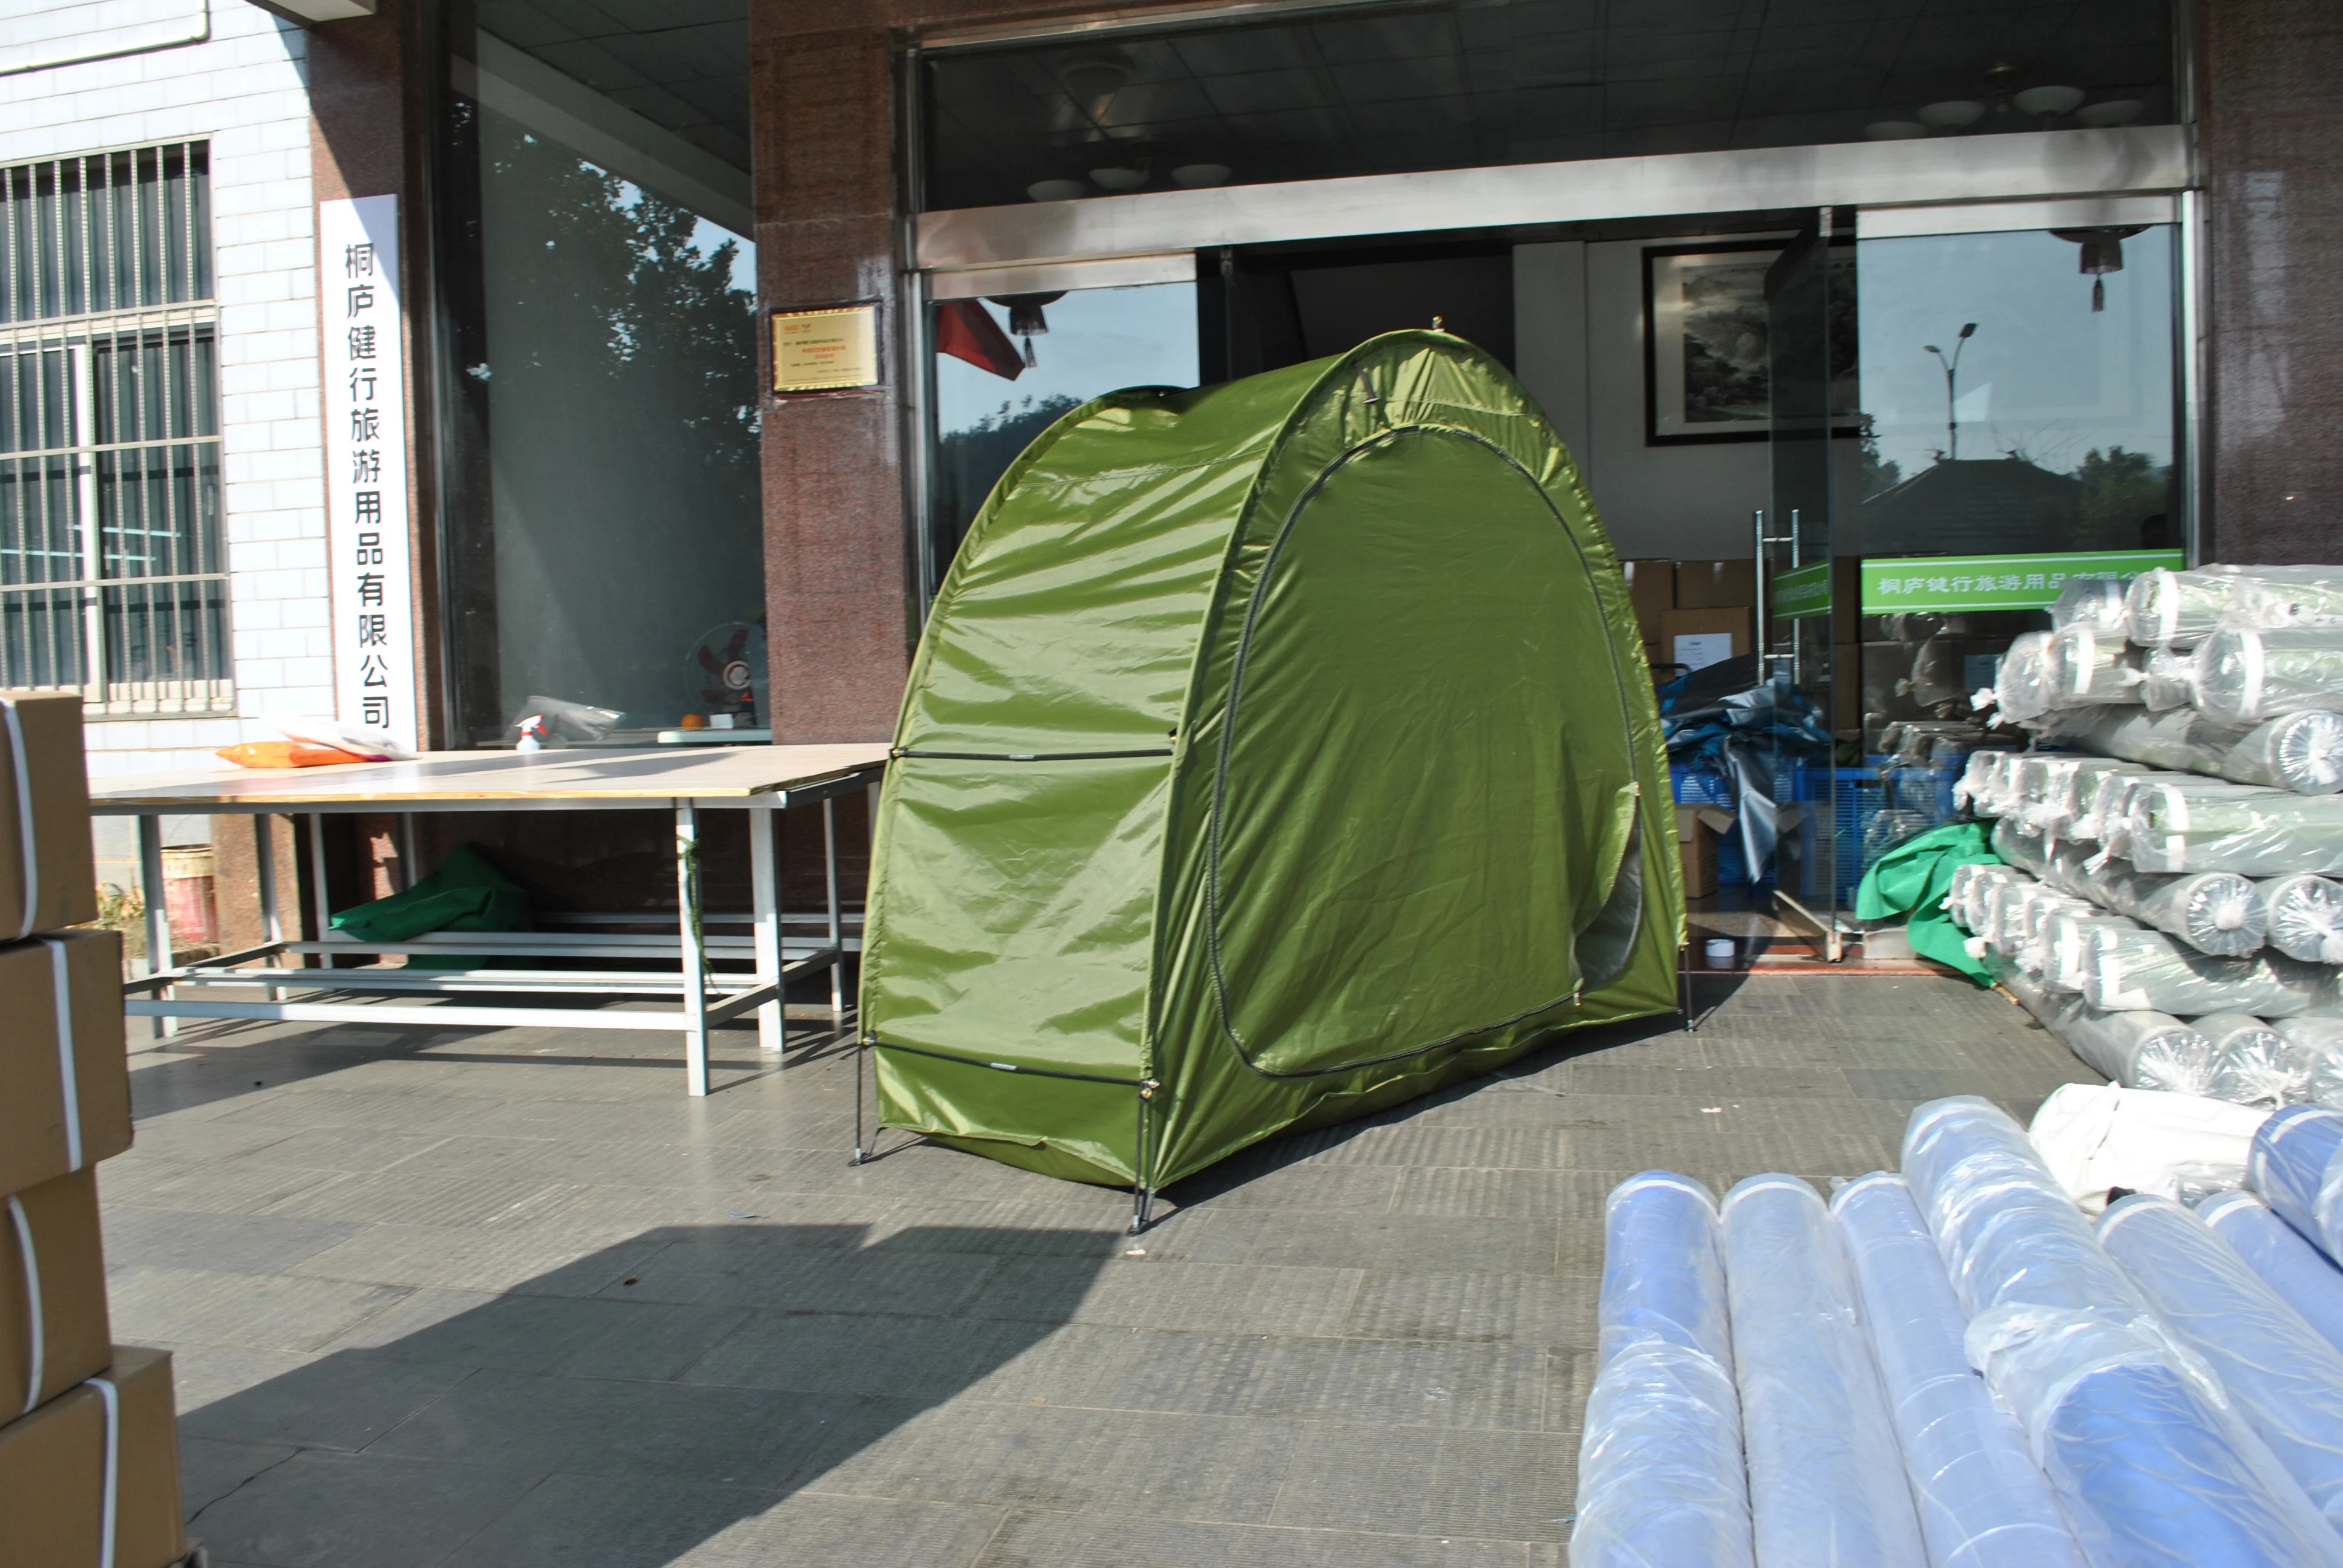 Jadeshay Couverture de Rangement de Jardin de Tente de Remise de Bicyclette de Tente de vélo pour la randonnée de Camping darrière-Cour en Plein air 